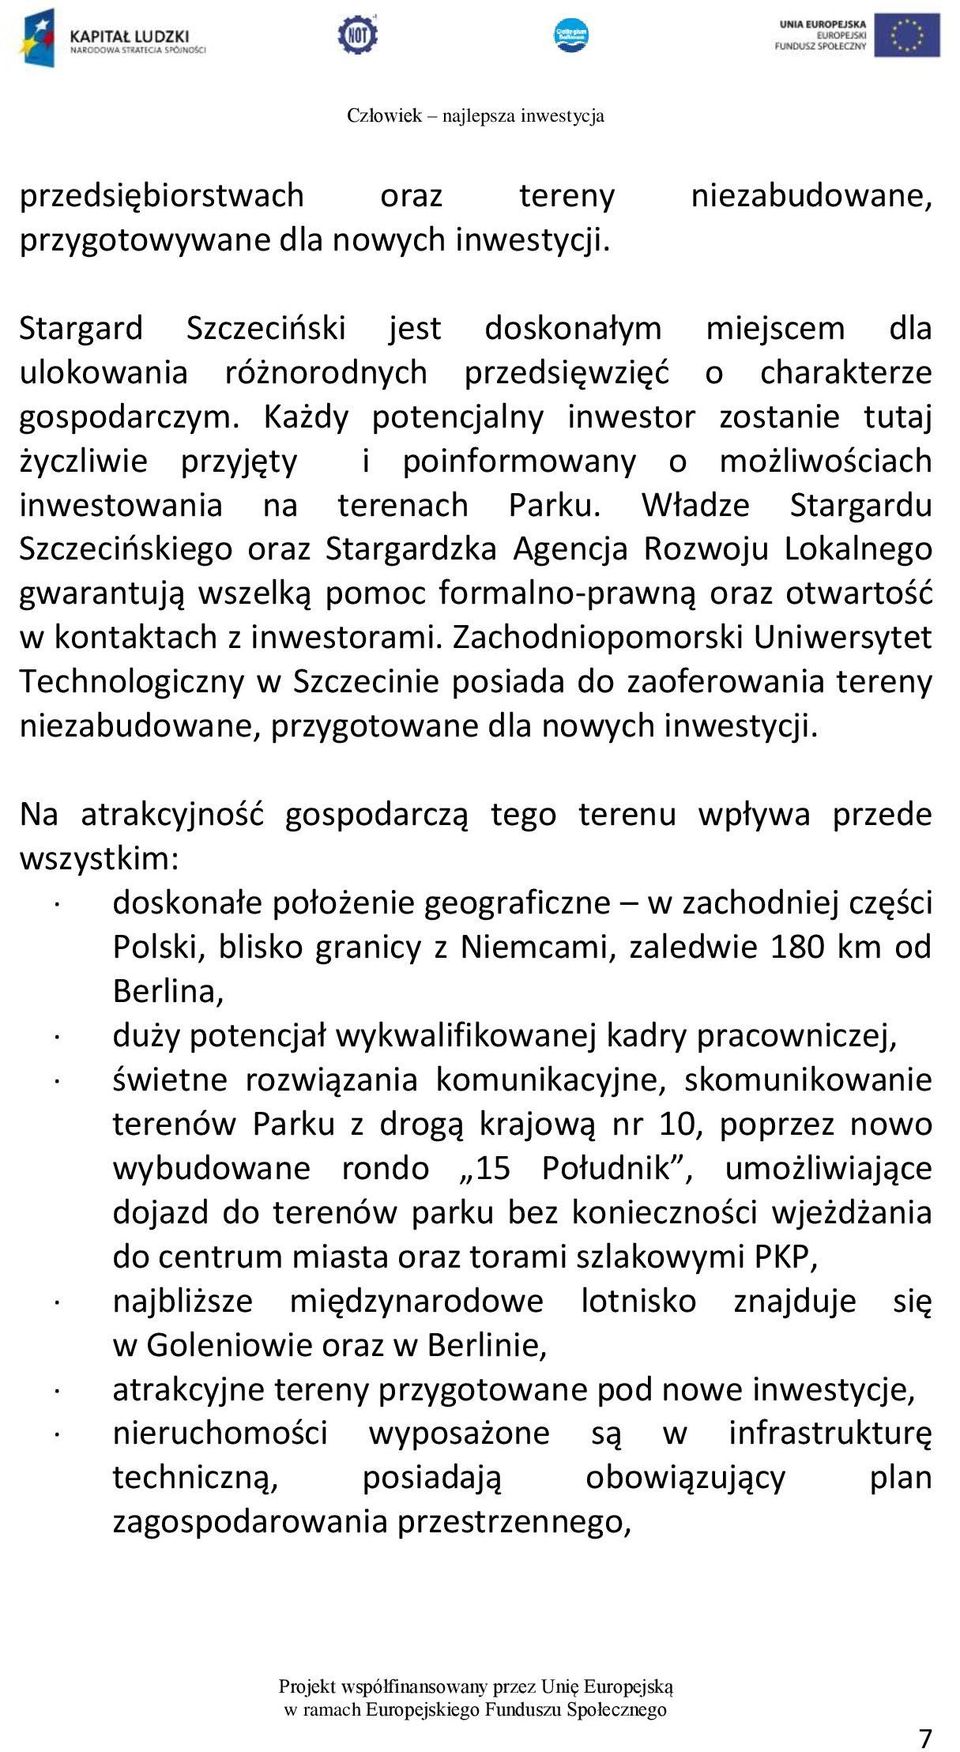 Władze Stargardu Szczecińskiego oraz Stargardzka Agencja Rozwoju Lokalnego gwarantują wszelką pomoc formalno-prawną oraz otwartość w kontaktach z inwestorami.